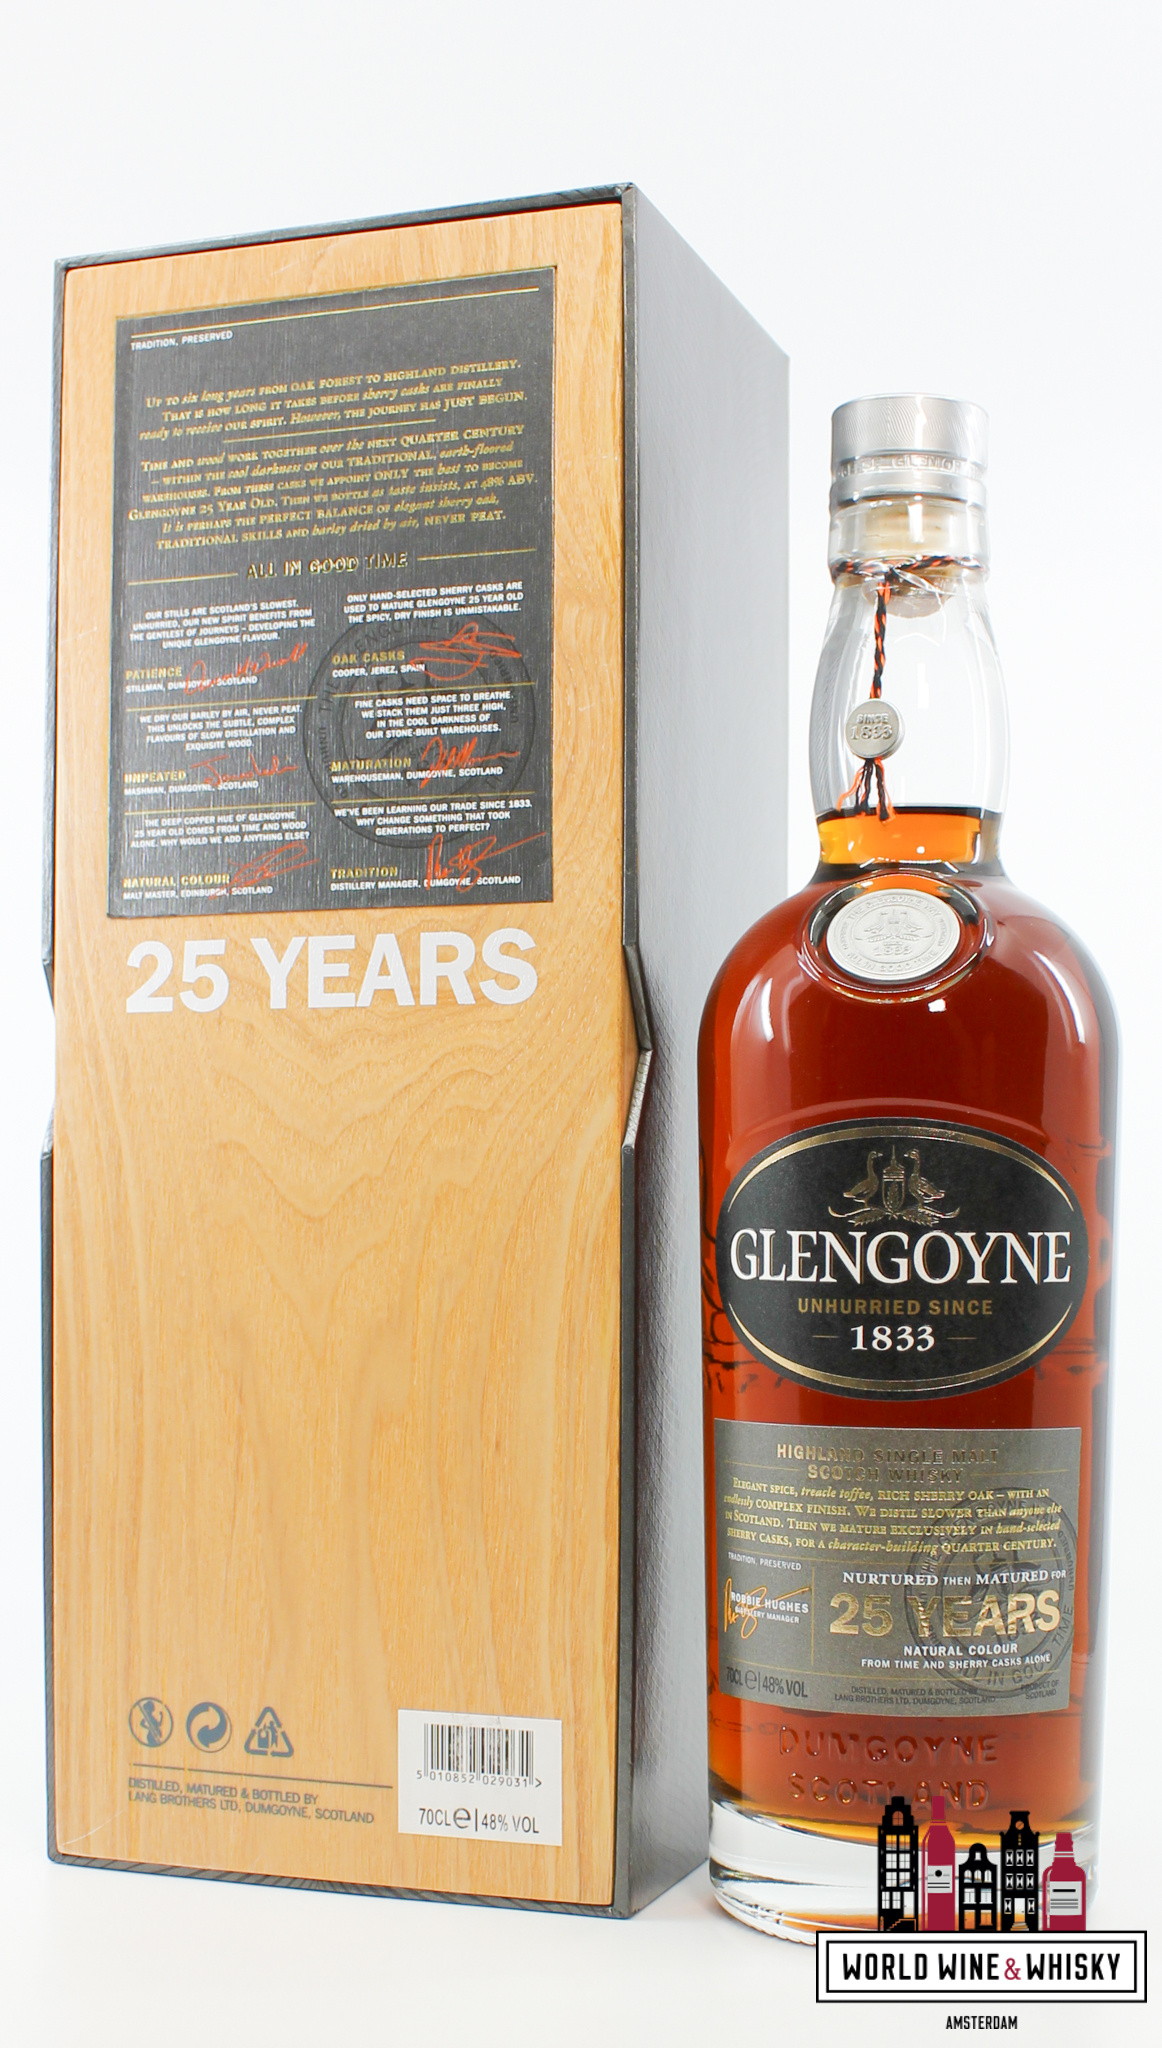 Glengoyne Glengoyne 25 Years Old 2019 - Unhurried Since 1833 48%